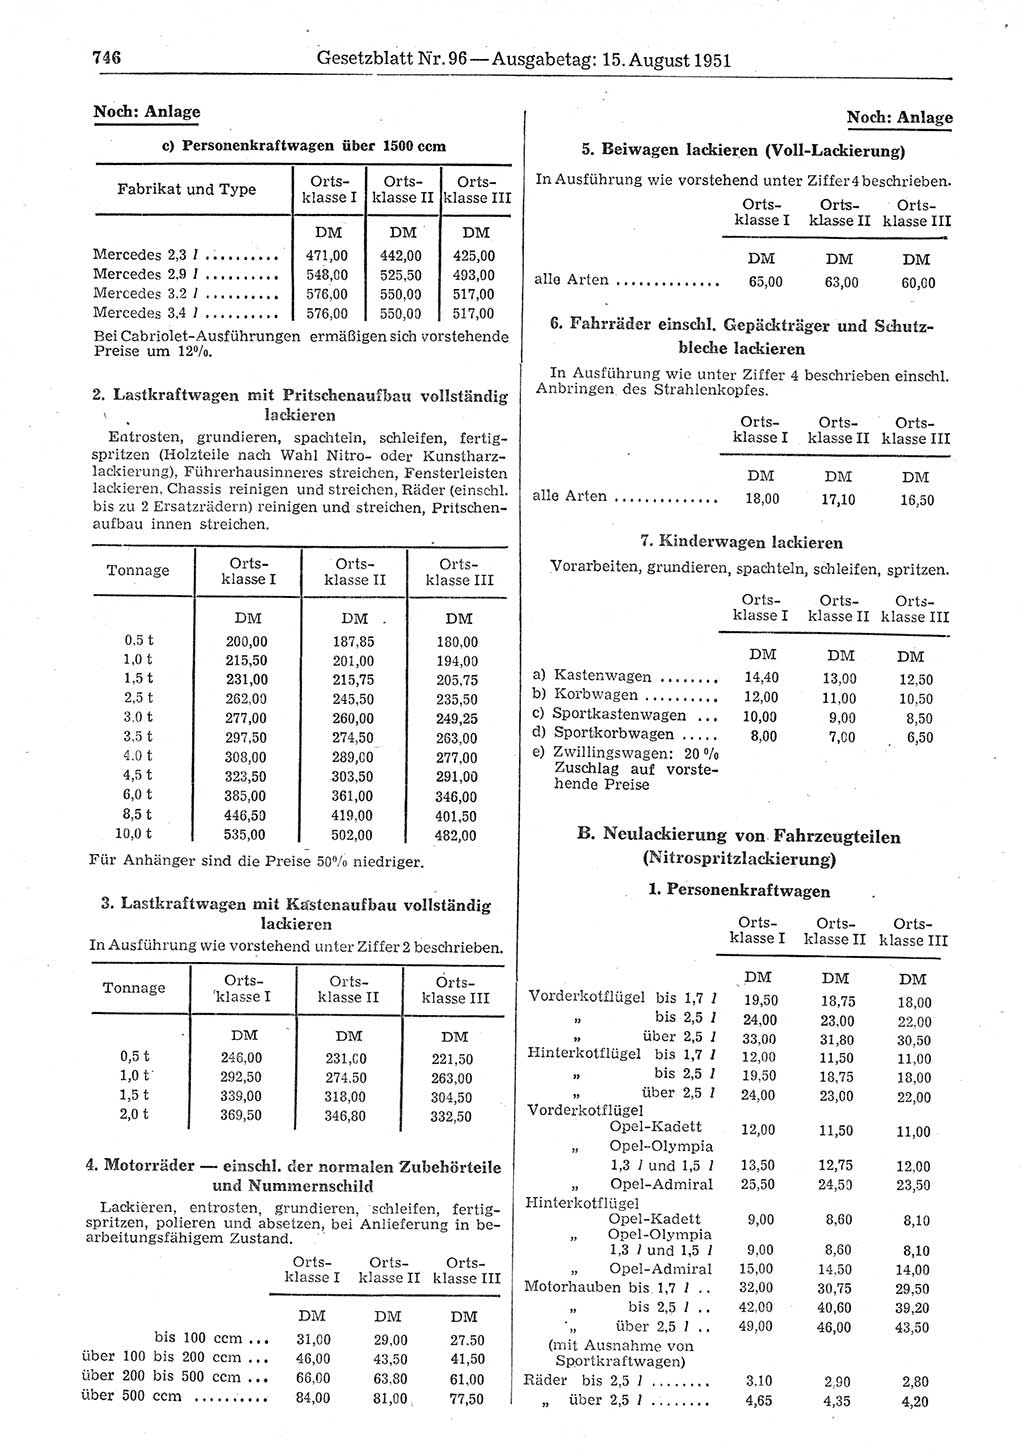 Gesetzblatt (GBl.) der Deutschen Demokratischen Republik (DDR) 1951, Seite 746 (GBl. DDR 1951, S. 746)